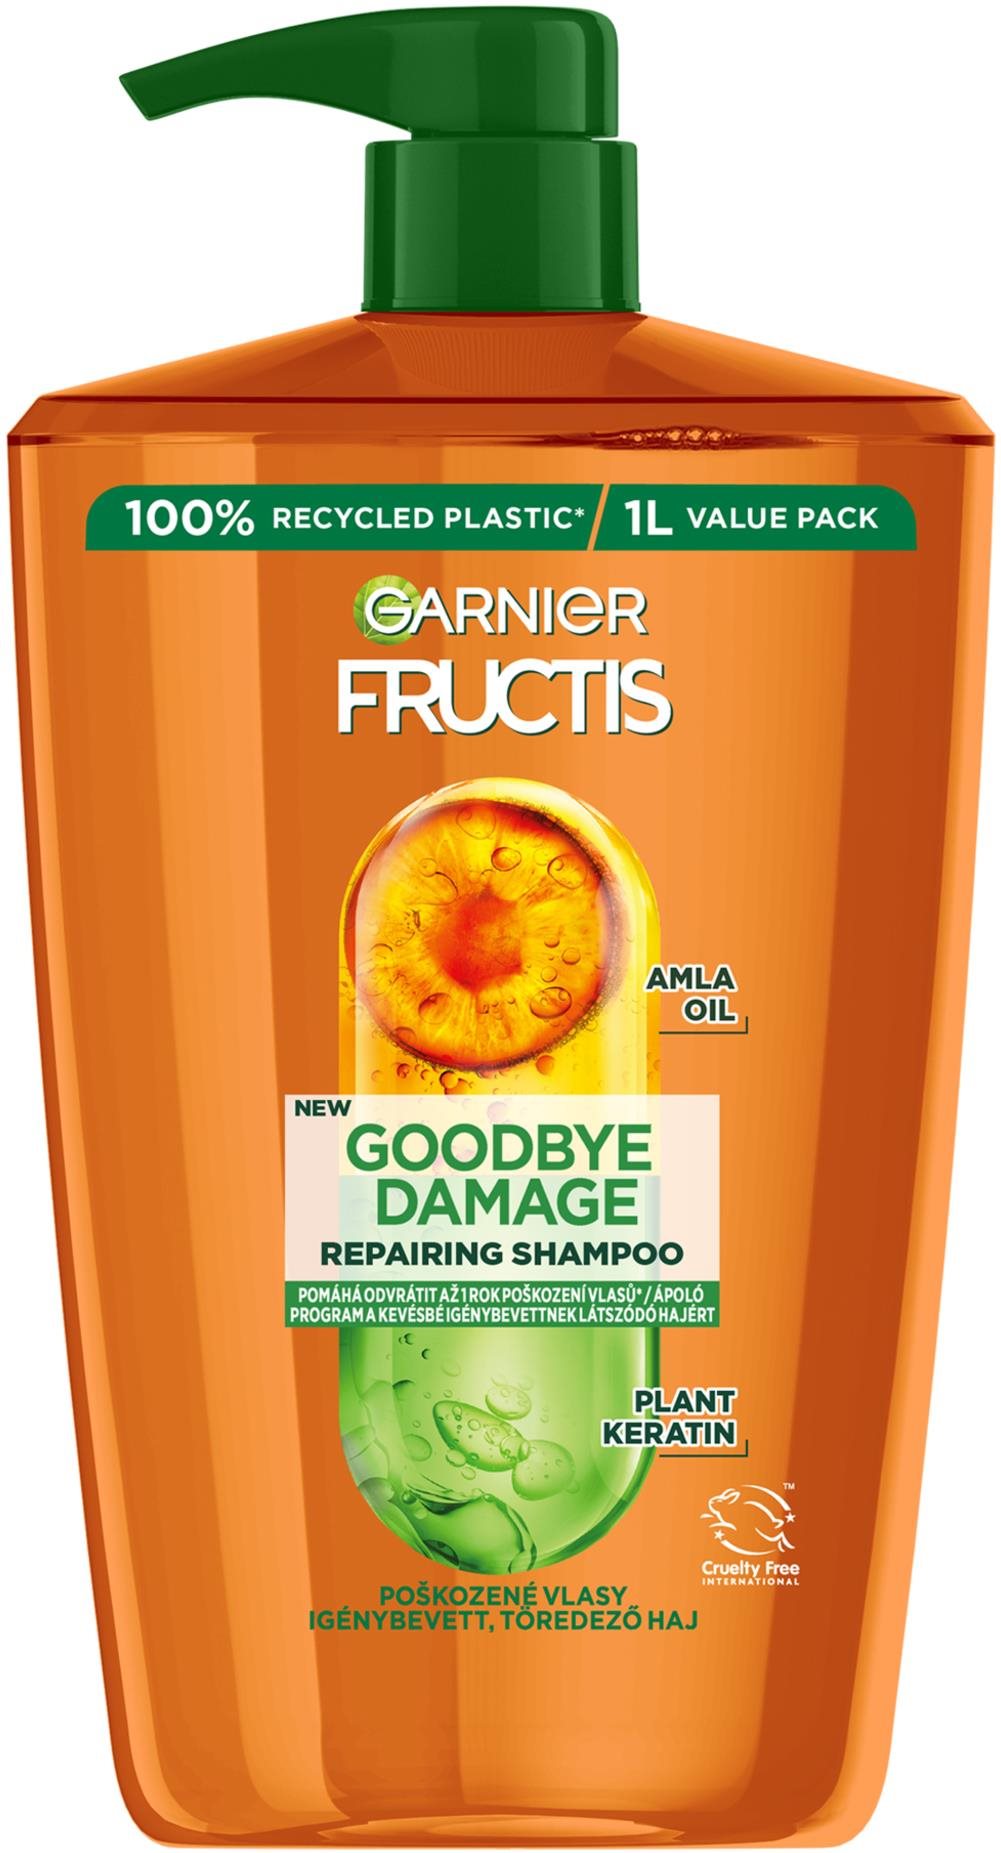 GARNIER Fructis Goodbye Damage sampon 1000 ml